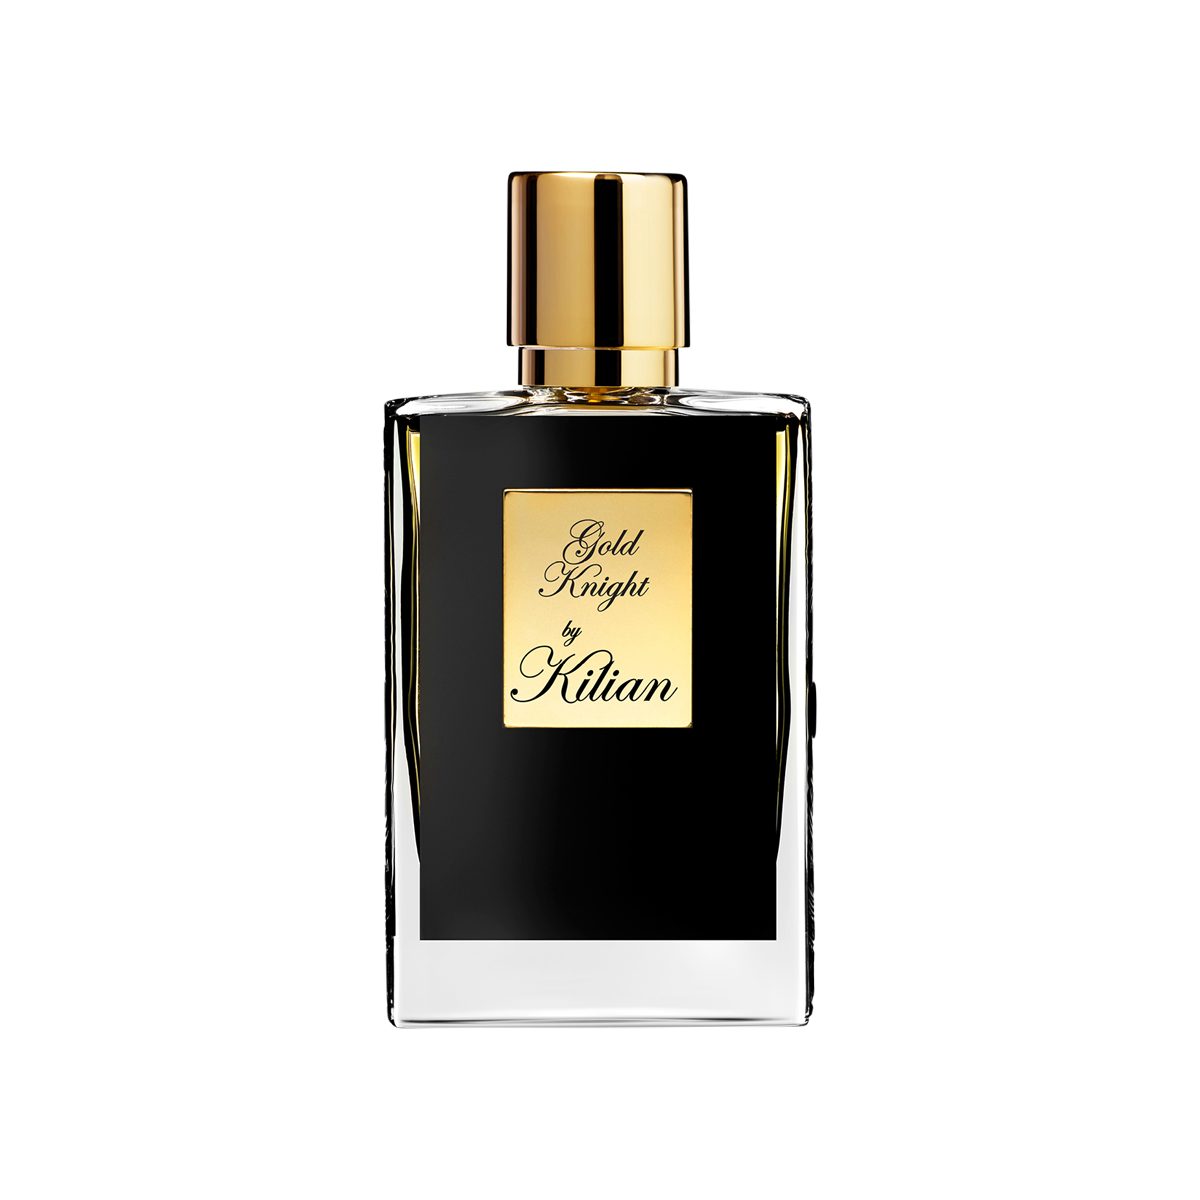 Kilian Paris - Gold Knight Eau de Parfum